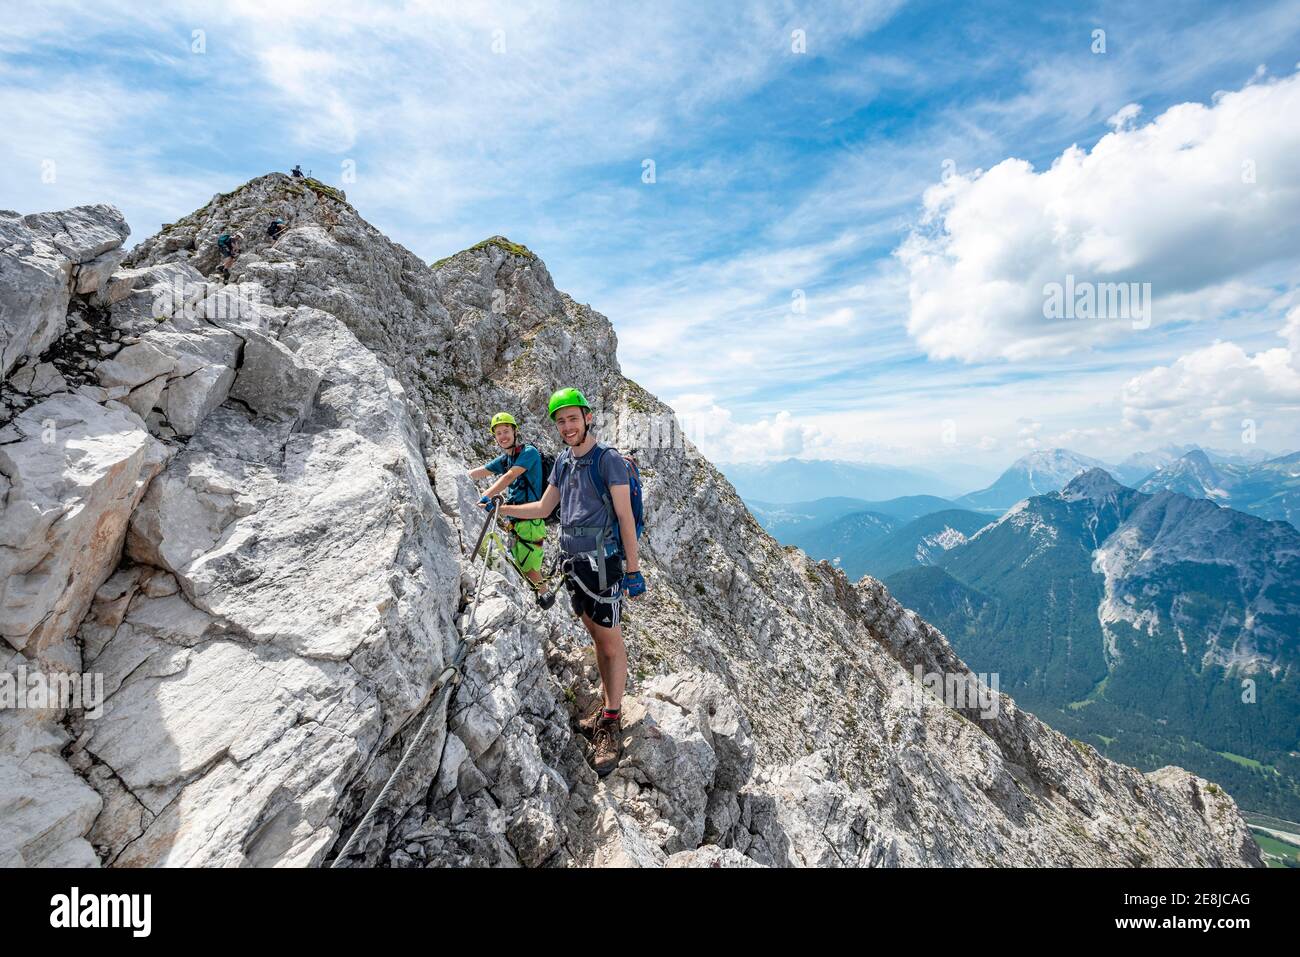 Bergsteiger, die auf einer gesicherten Seilstrecke klettern, Mittenwalder Höhenweg, Karwendelgebirge, Mittenwald, Bayern, Deutschland Stockfoto